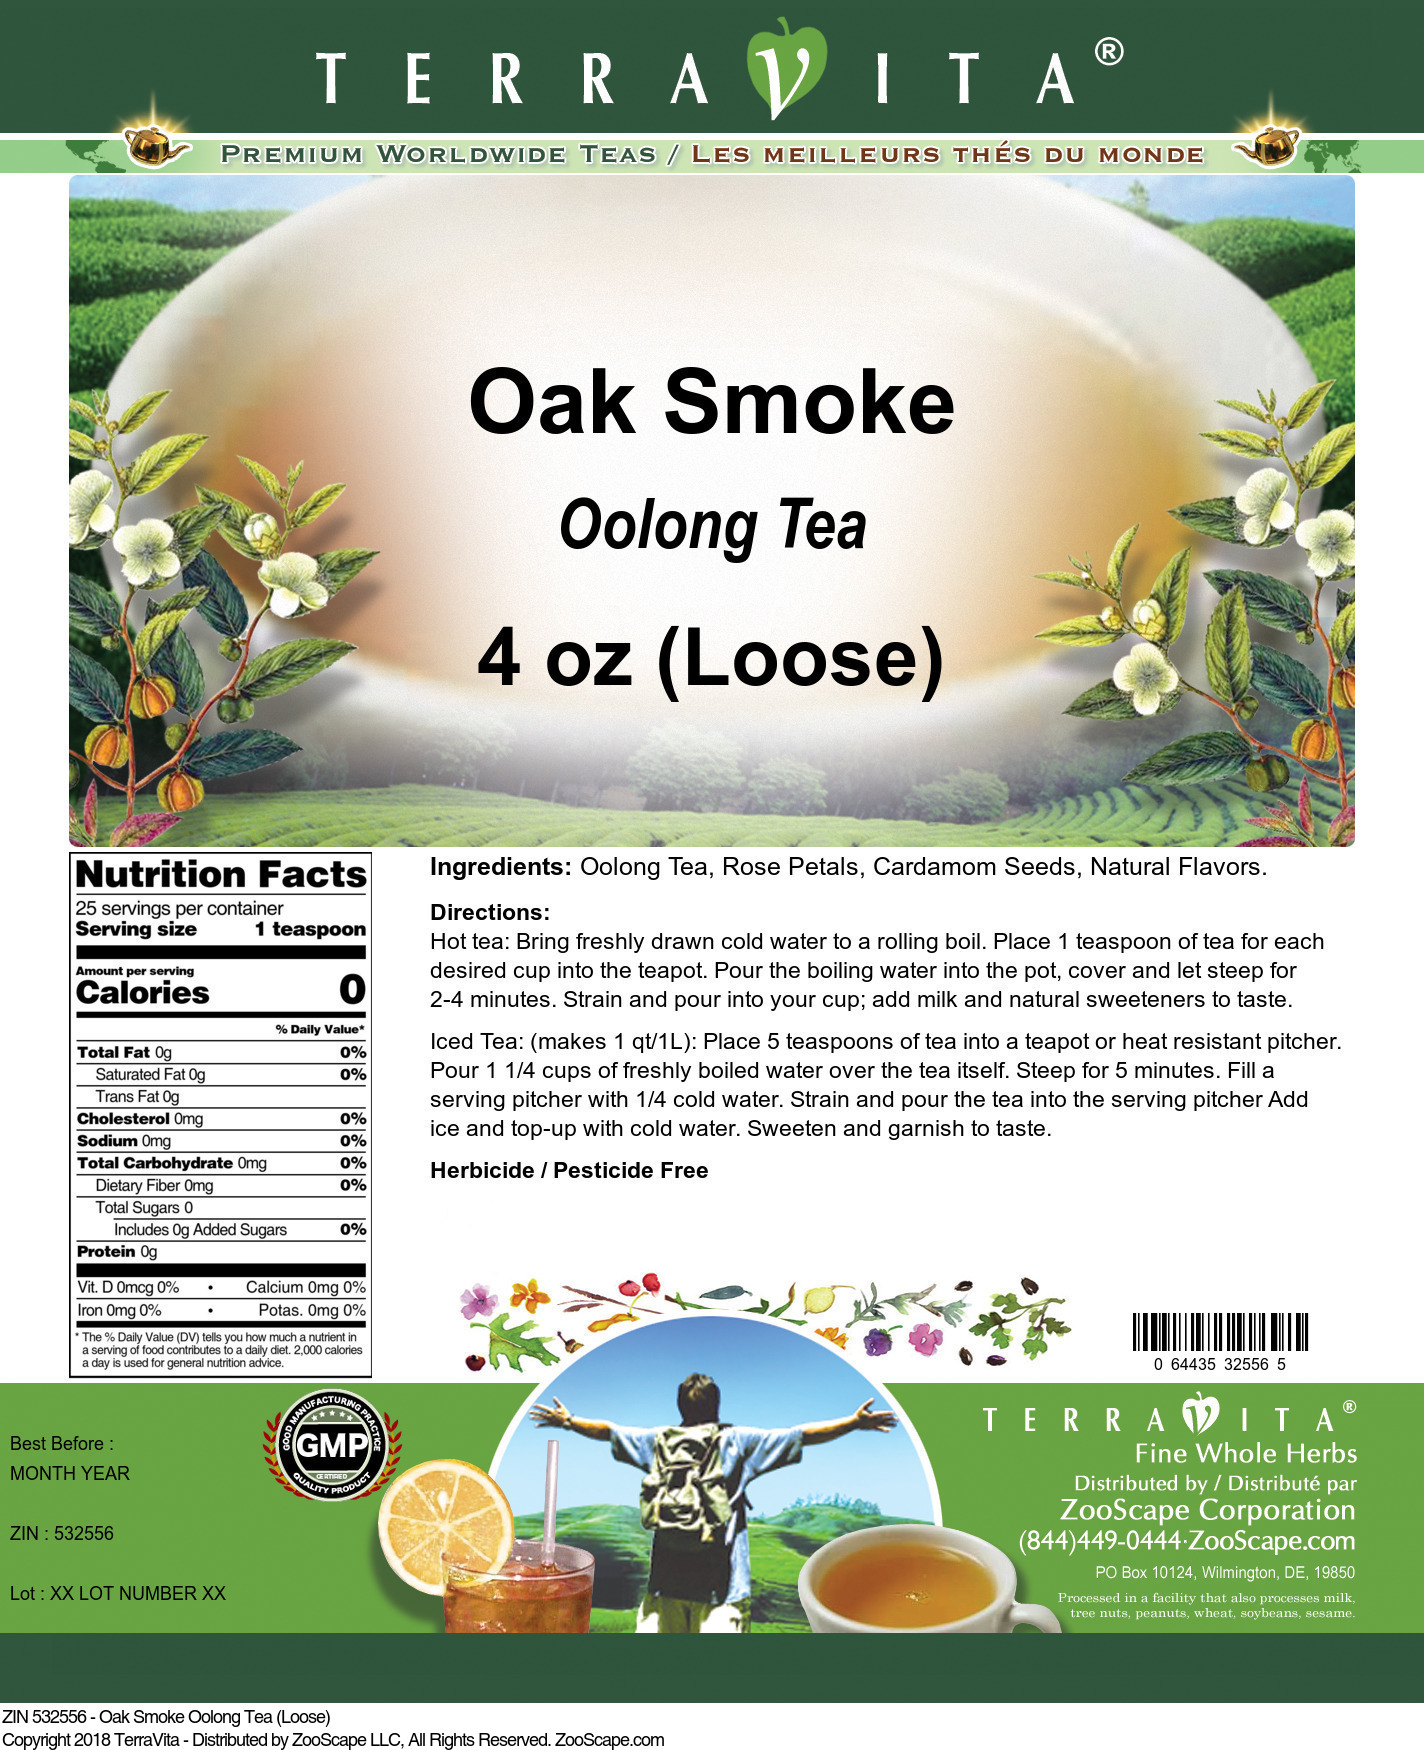 Oak Smoke Oolong Tea (Loose) - Label